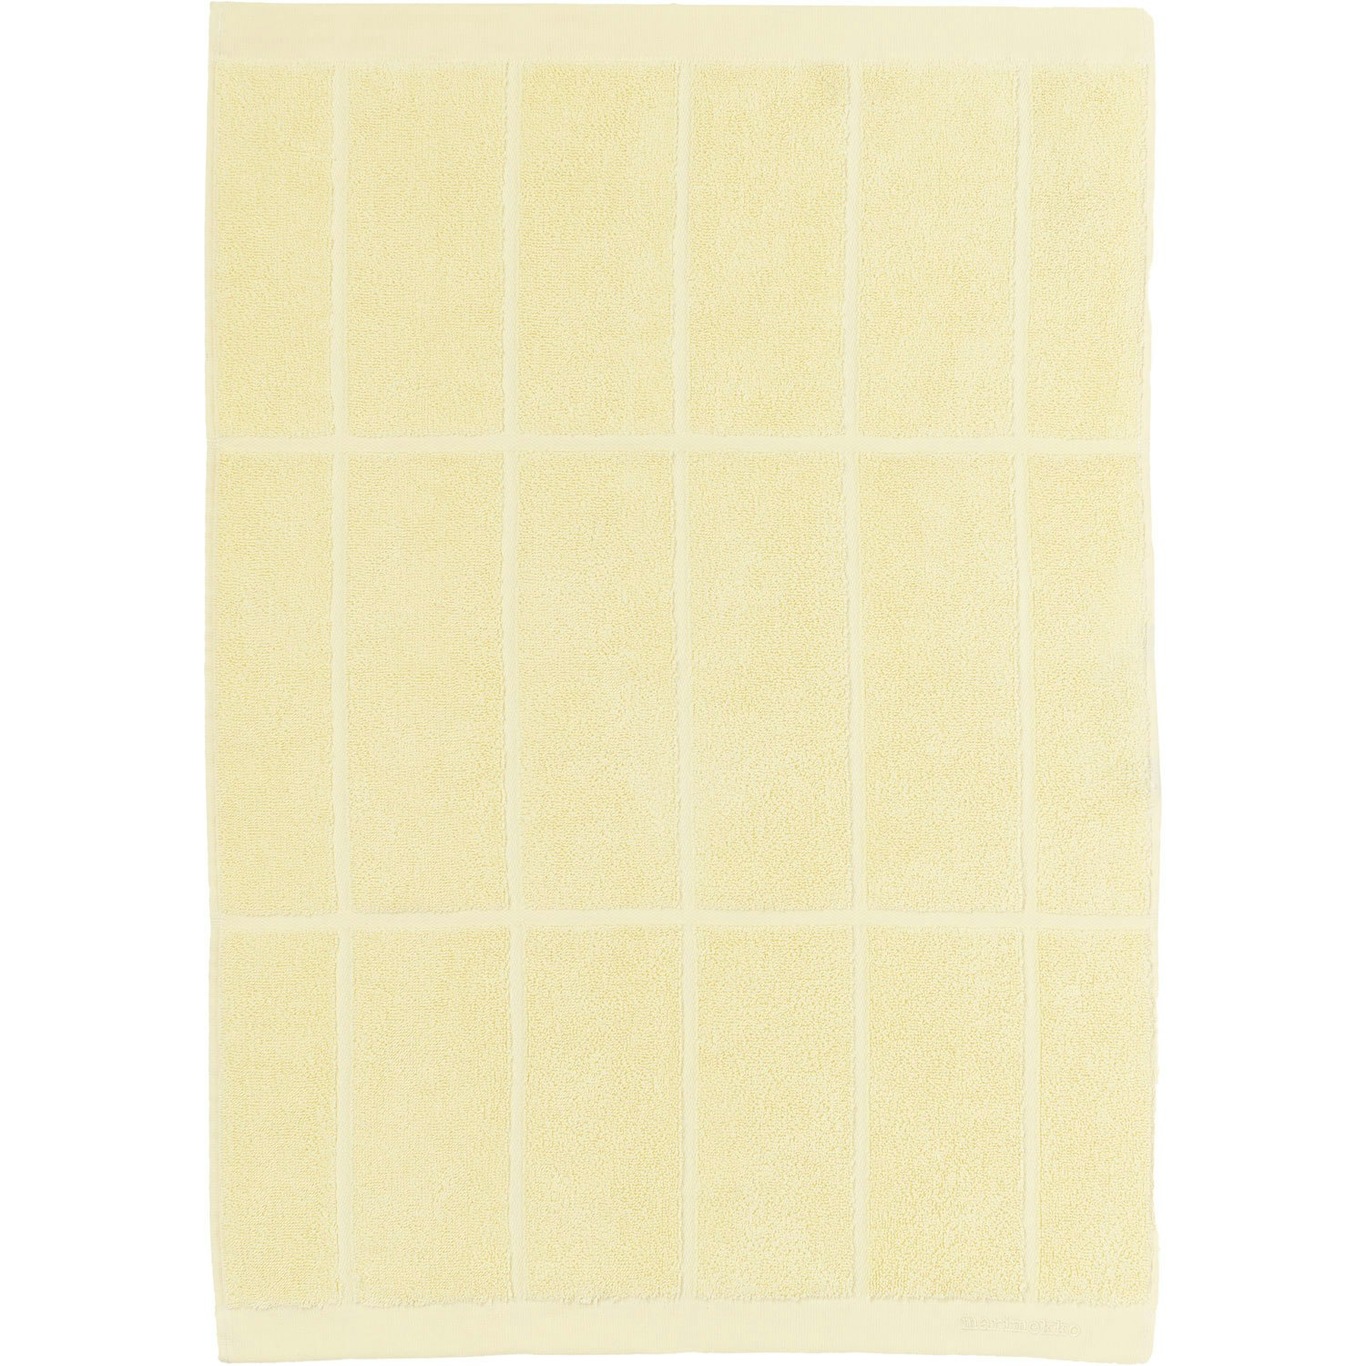 Tiiliskivi Handdoek 50x70 cm, Butter Yellow